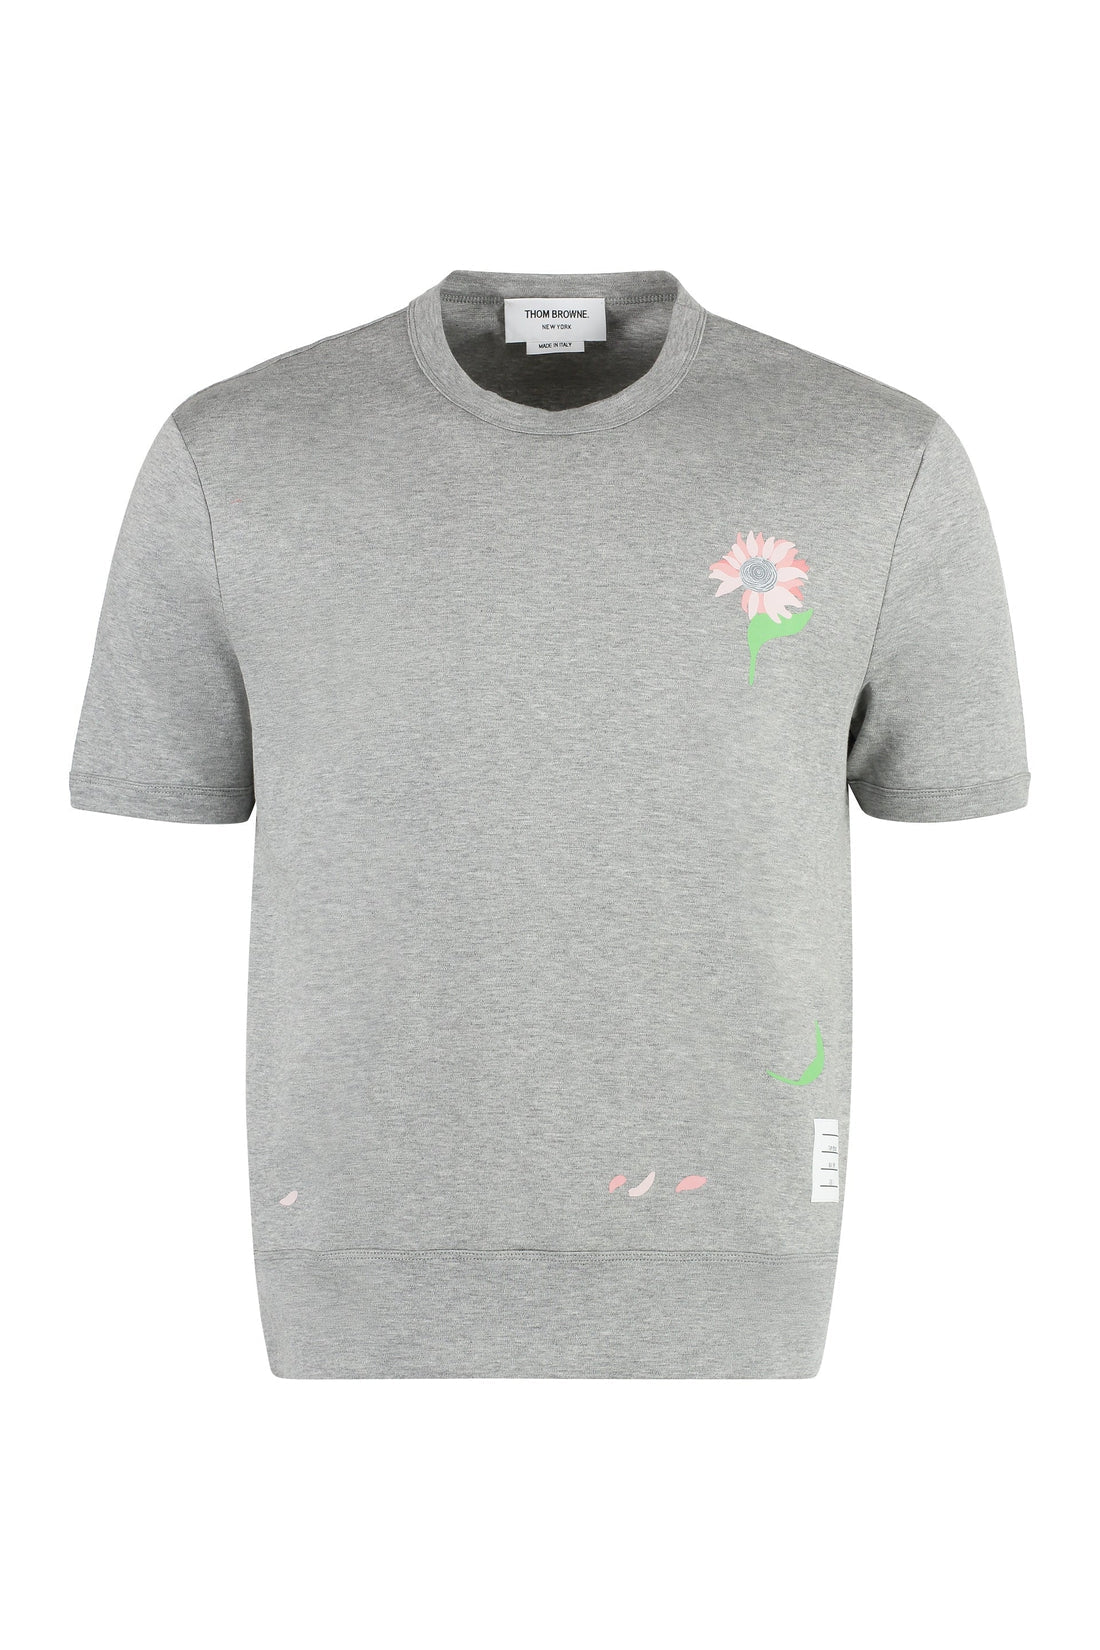 Thom Browne-OUTLET-SALE-Cotton crew-neck T-shirt-ARCHIVIST